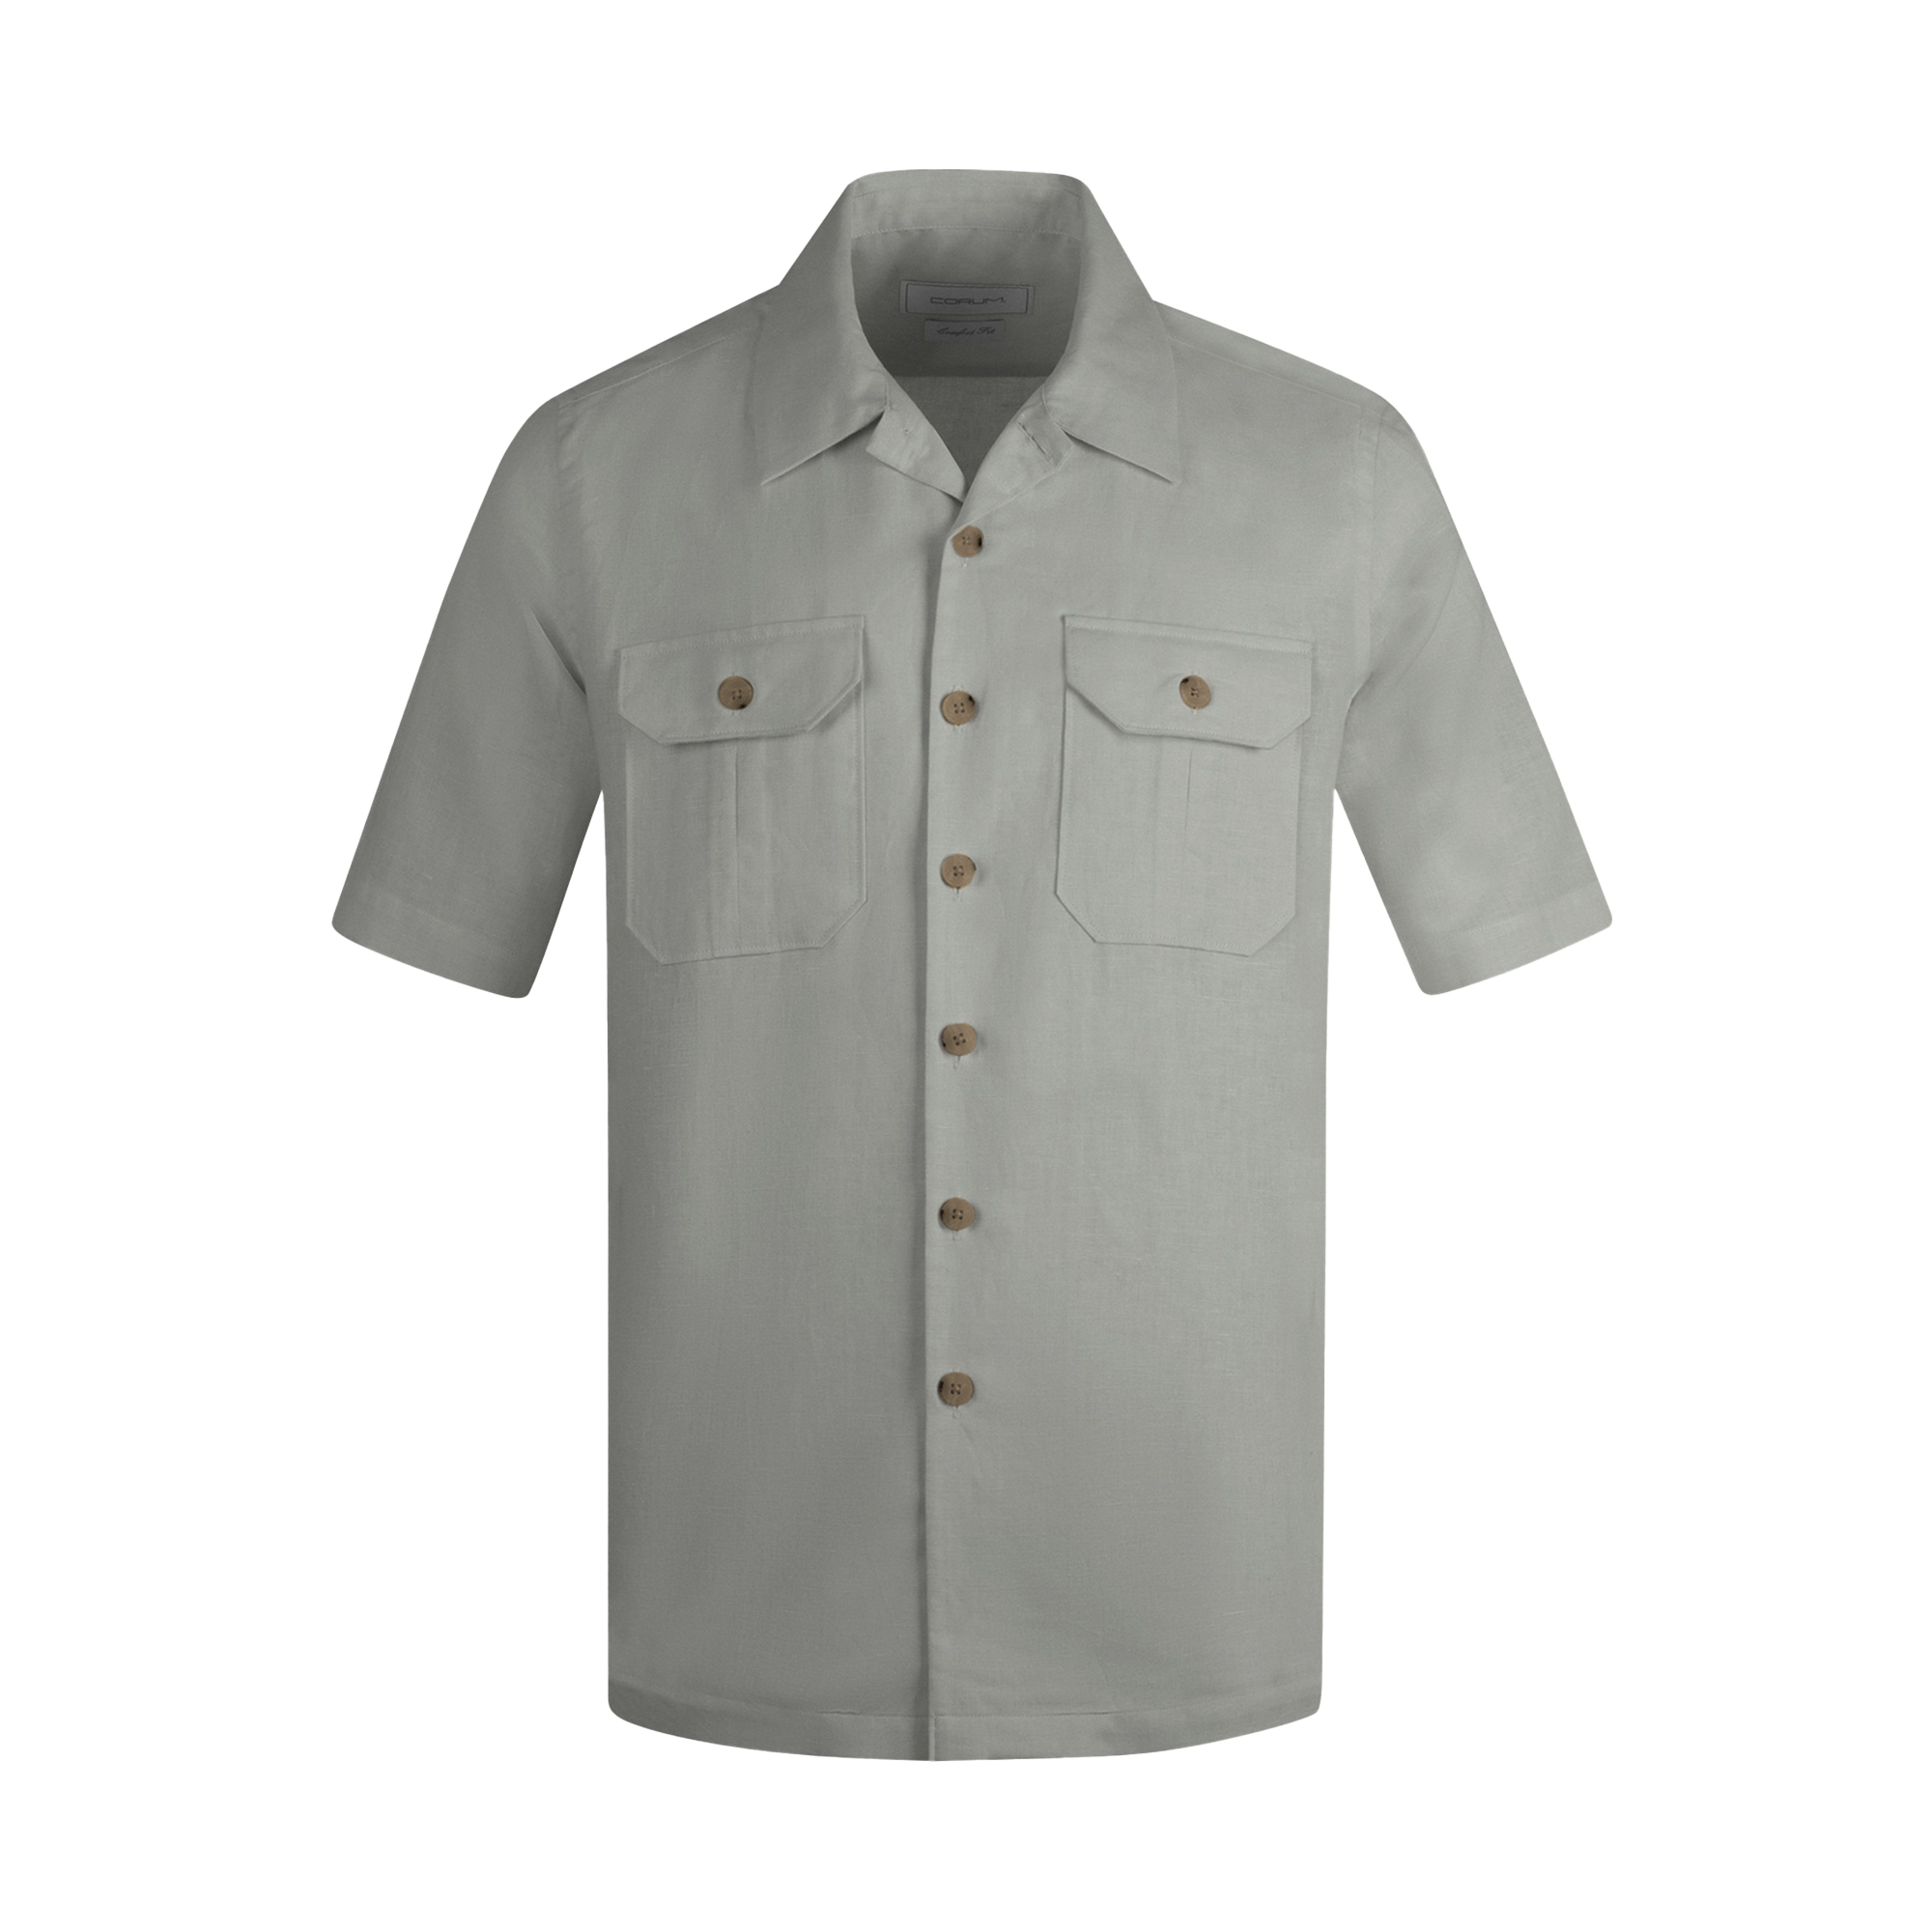 نکته خرید - قیمت روز پیراهن آستین کوتاه مردانه کروم مدل 2410151 خرید